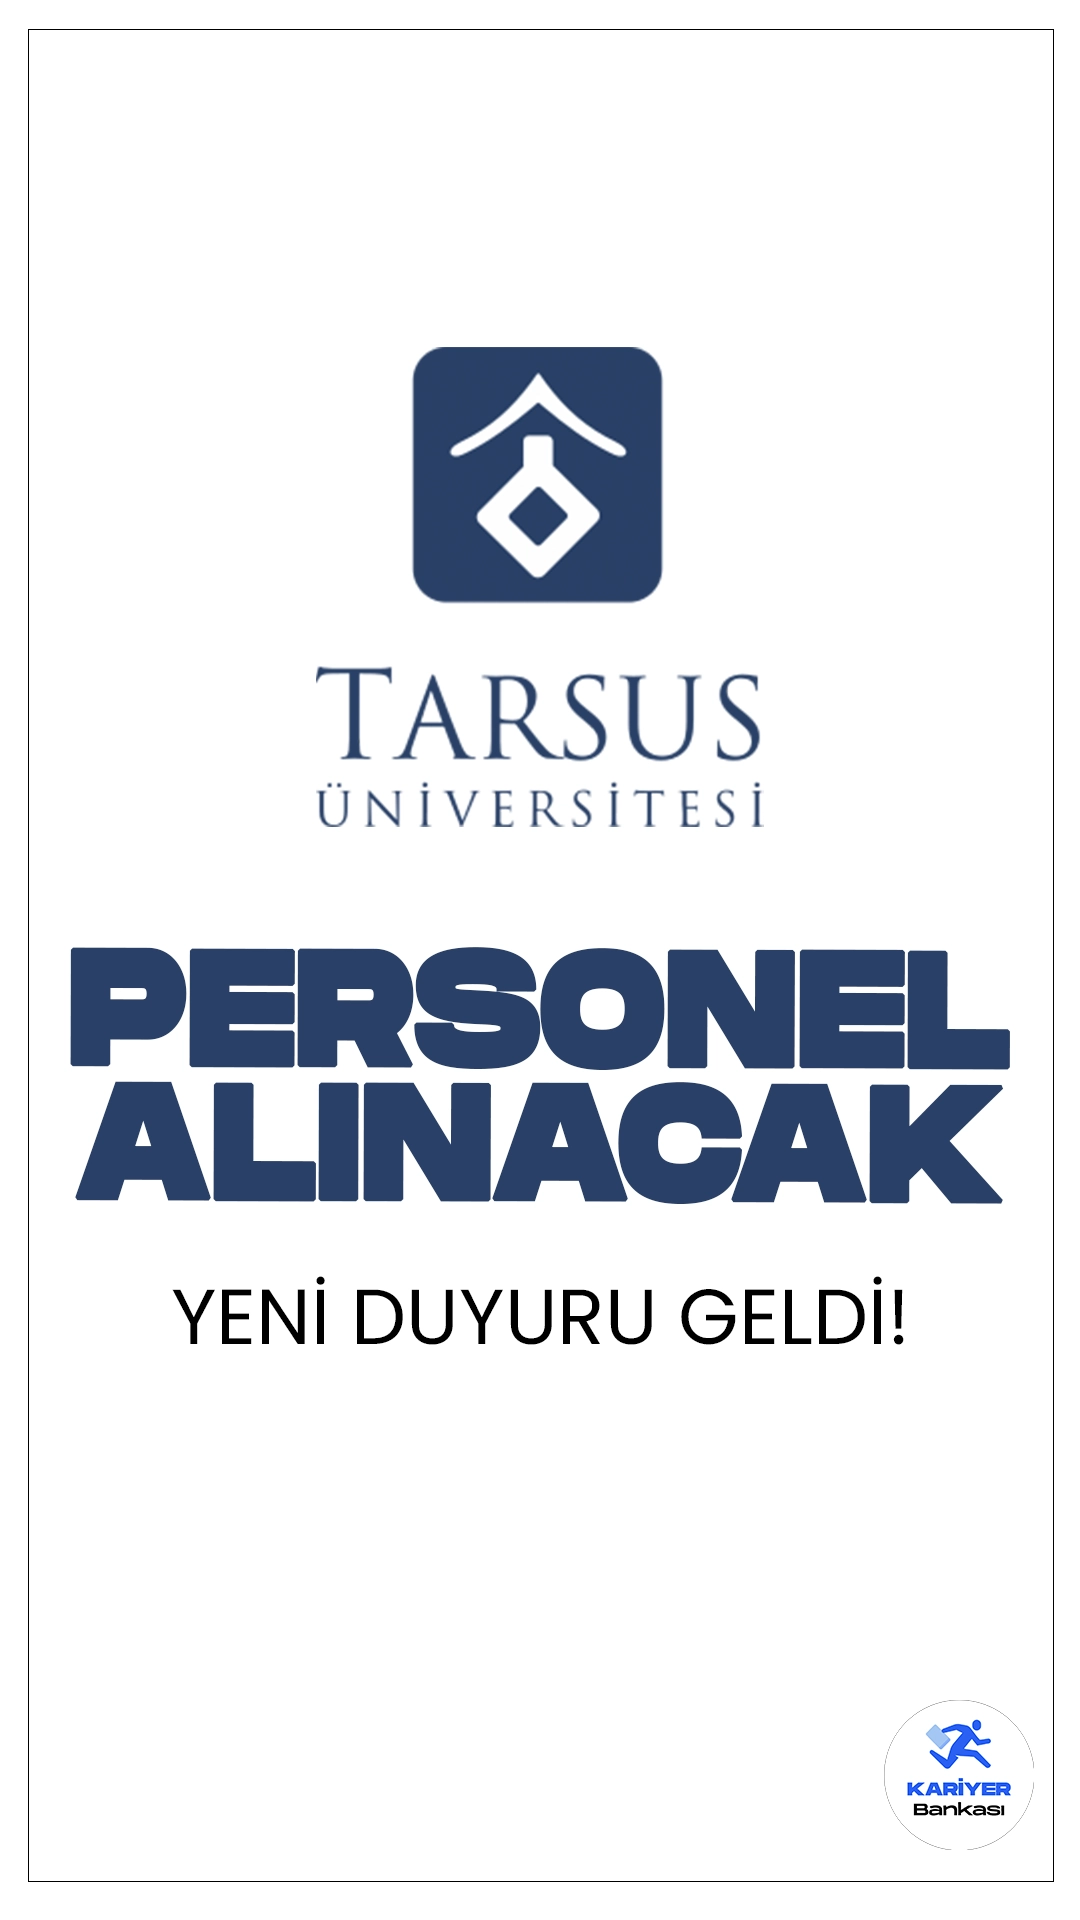 Tarsus Üniversitesi Büro Personeli ve Destek Personeli Alacak. İlgili alım duyurusuna göre, Tarsus Üniversitesine sözleşmeli büro personeli ve destek personeli(temizlik) alımı yapılacak. Başvurular bugün itibarıyla başladı.